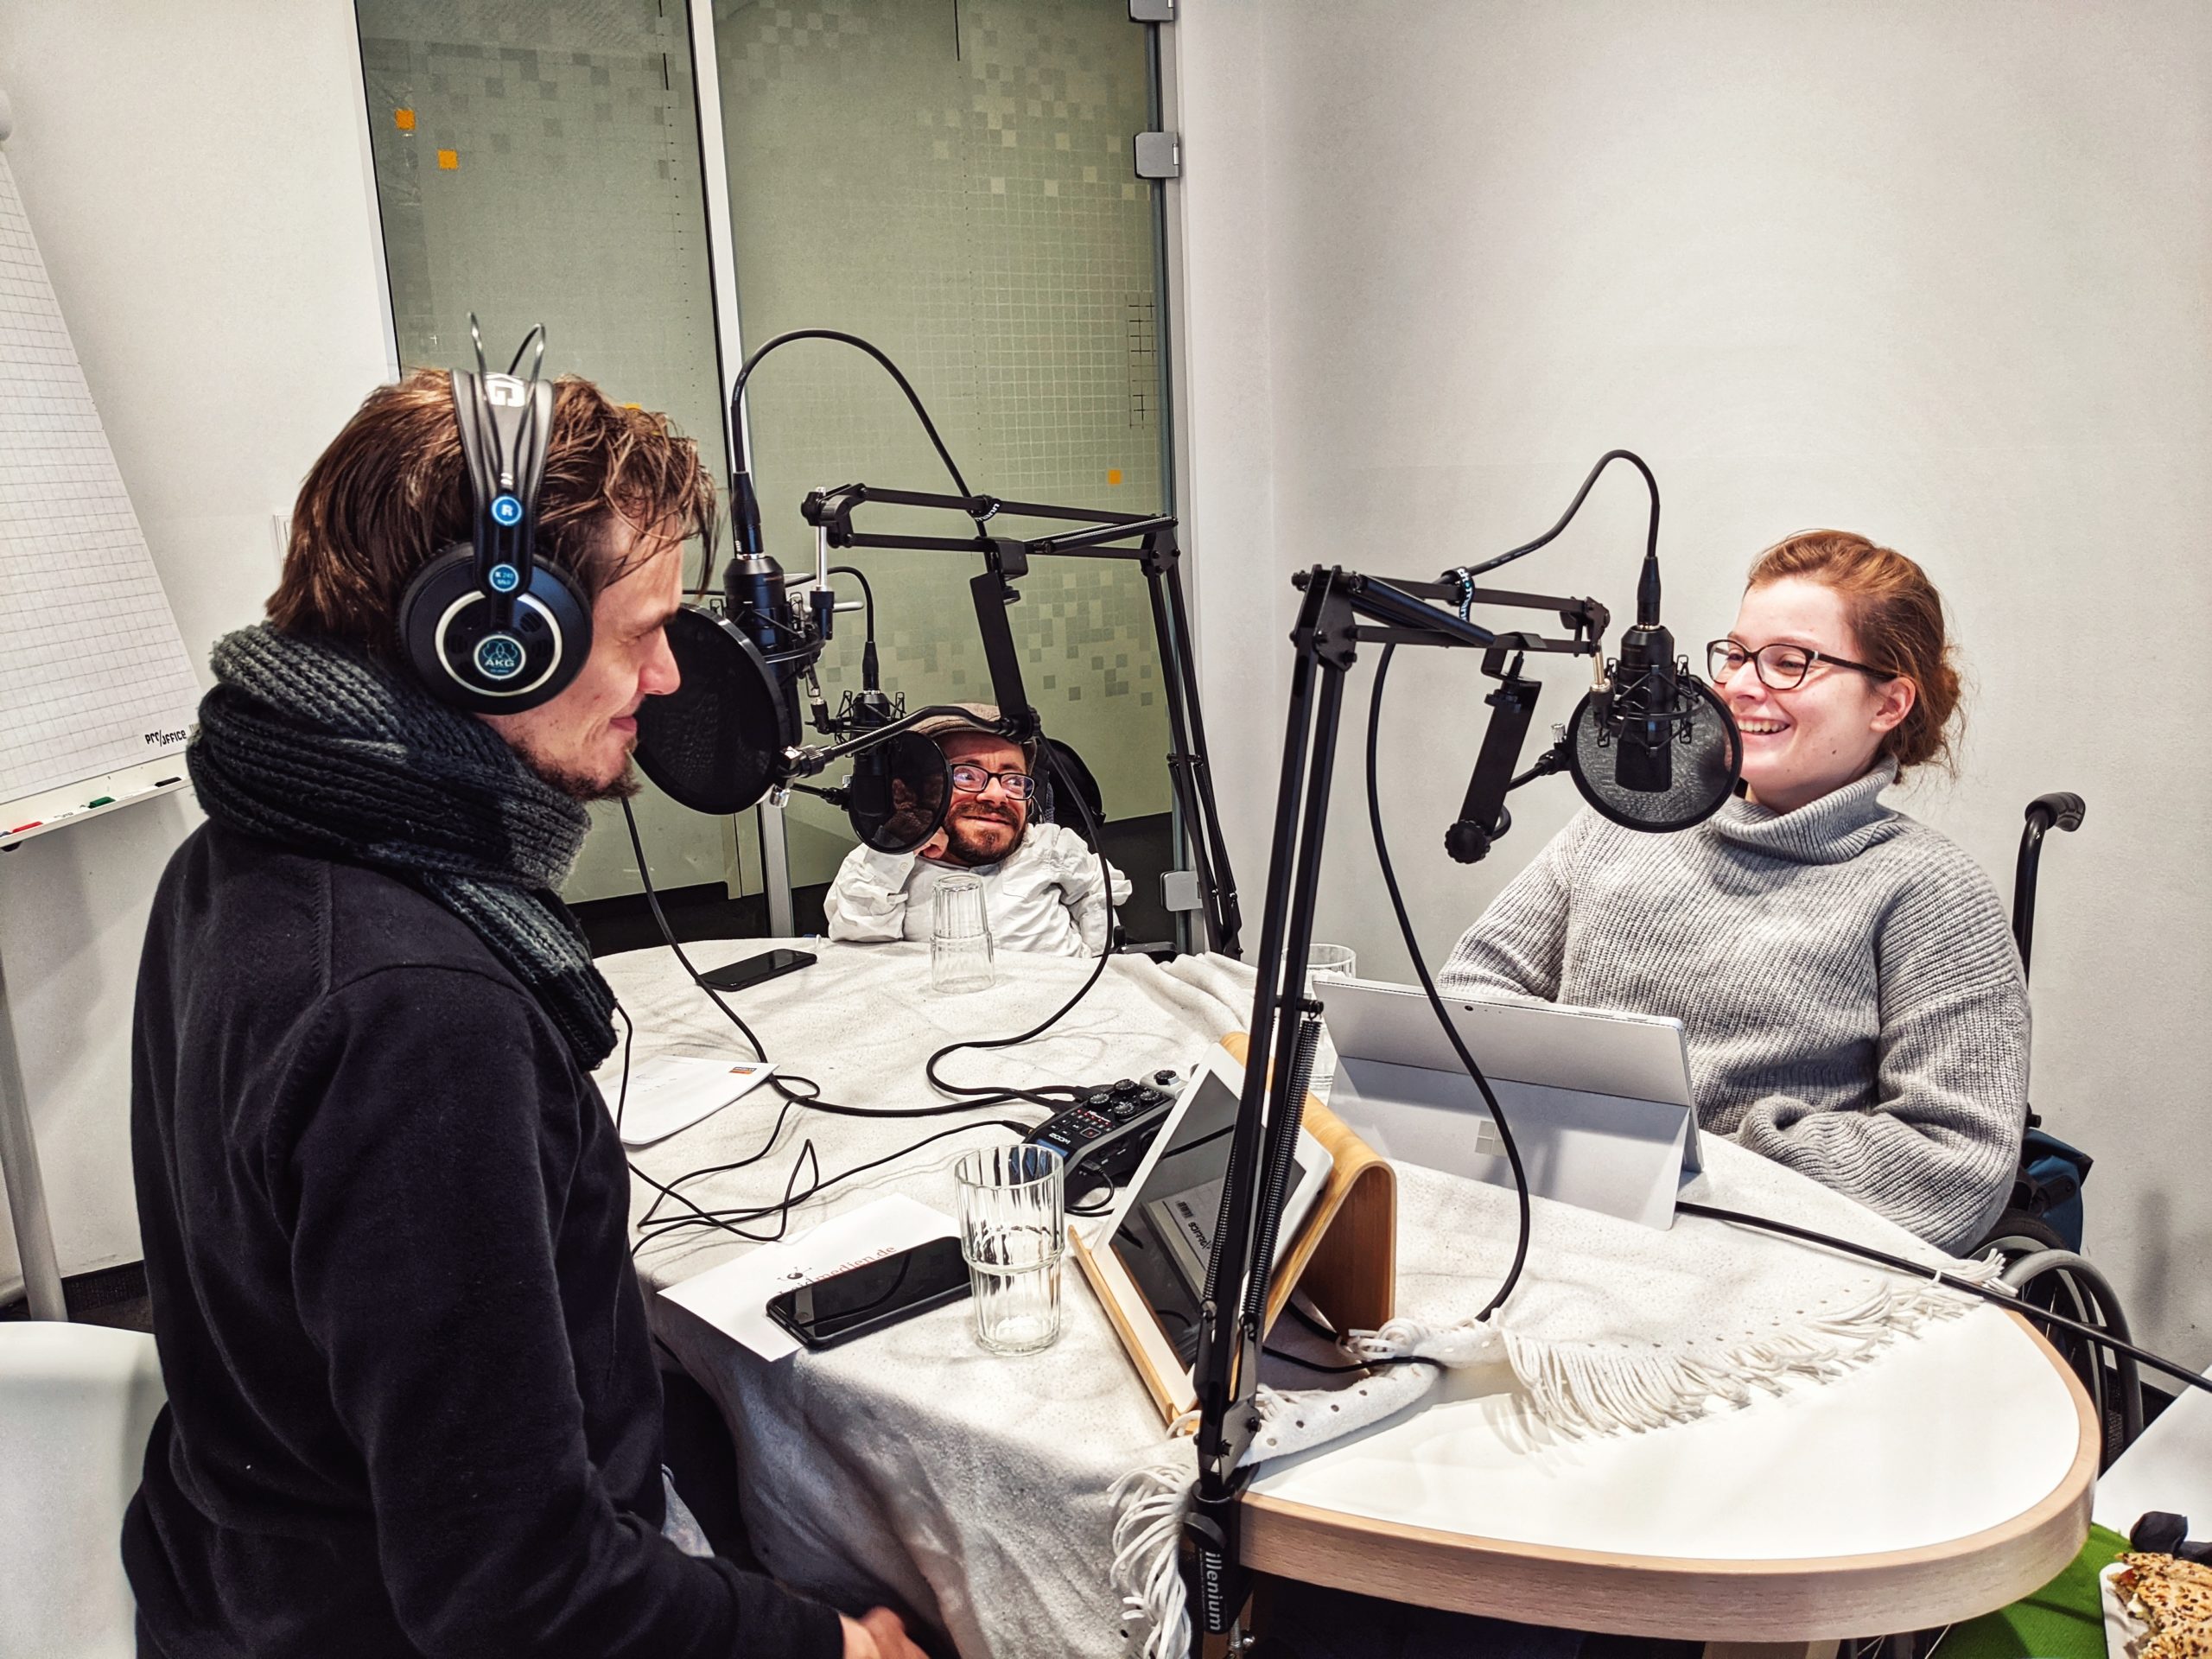 Bild der Aufnahme vom Podcast die Neue Norm, auf dem Bild befinden sich die drei Protagonist:innen an einem Tisch, die Stimmung ist fröhlich.